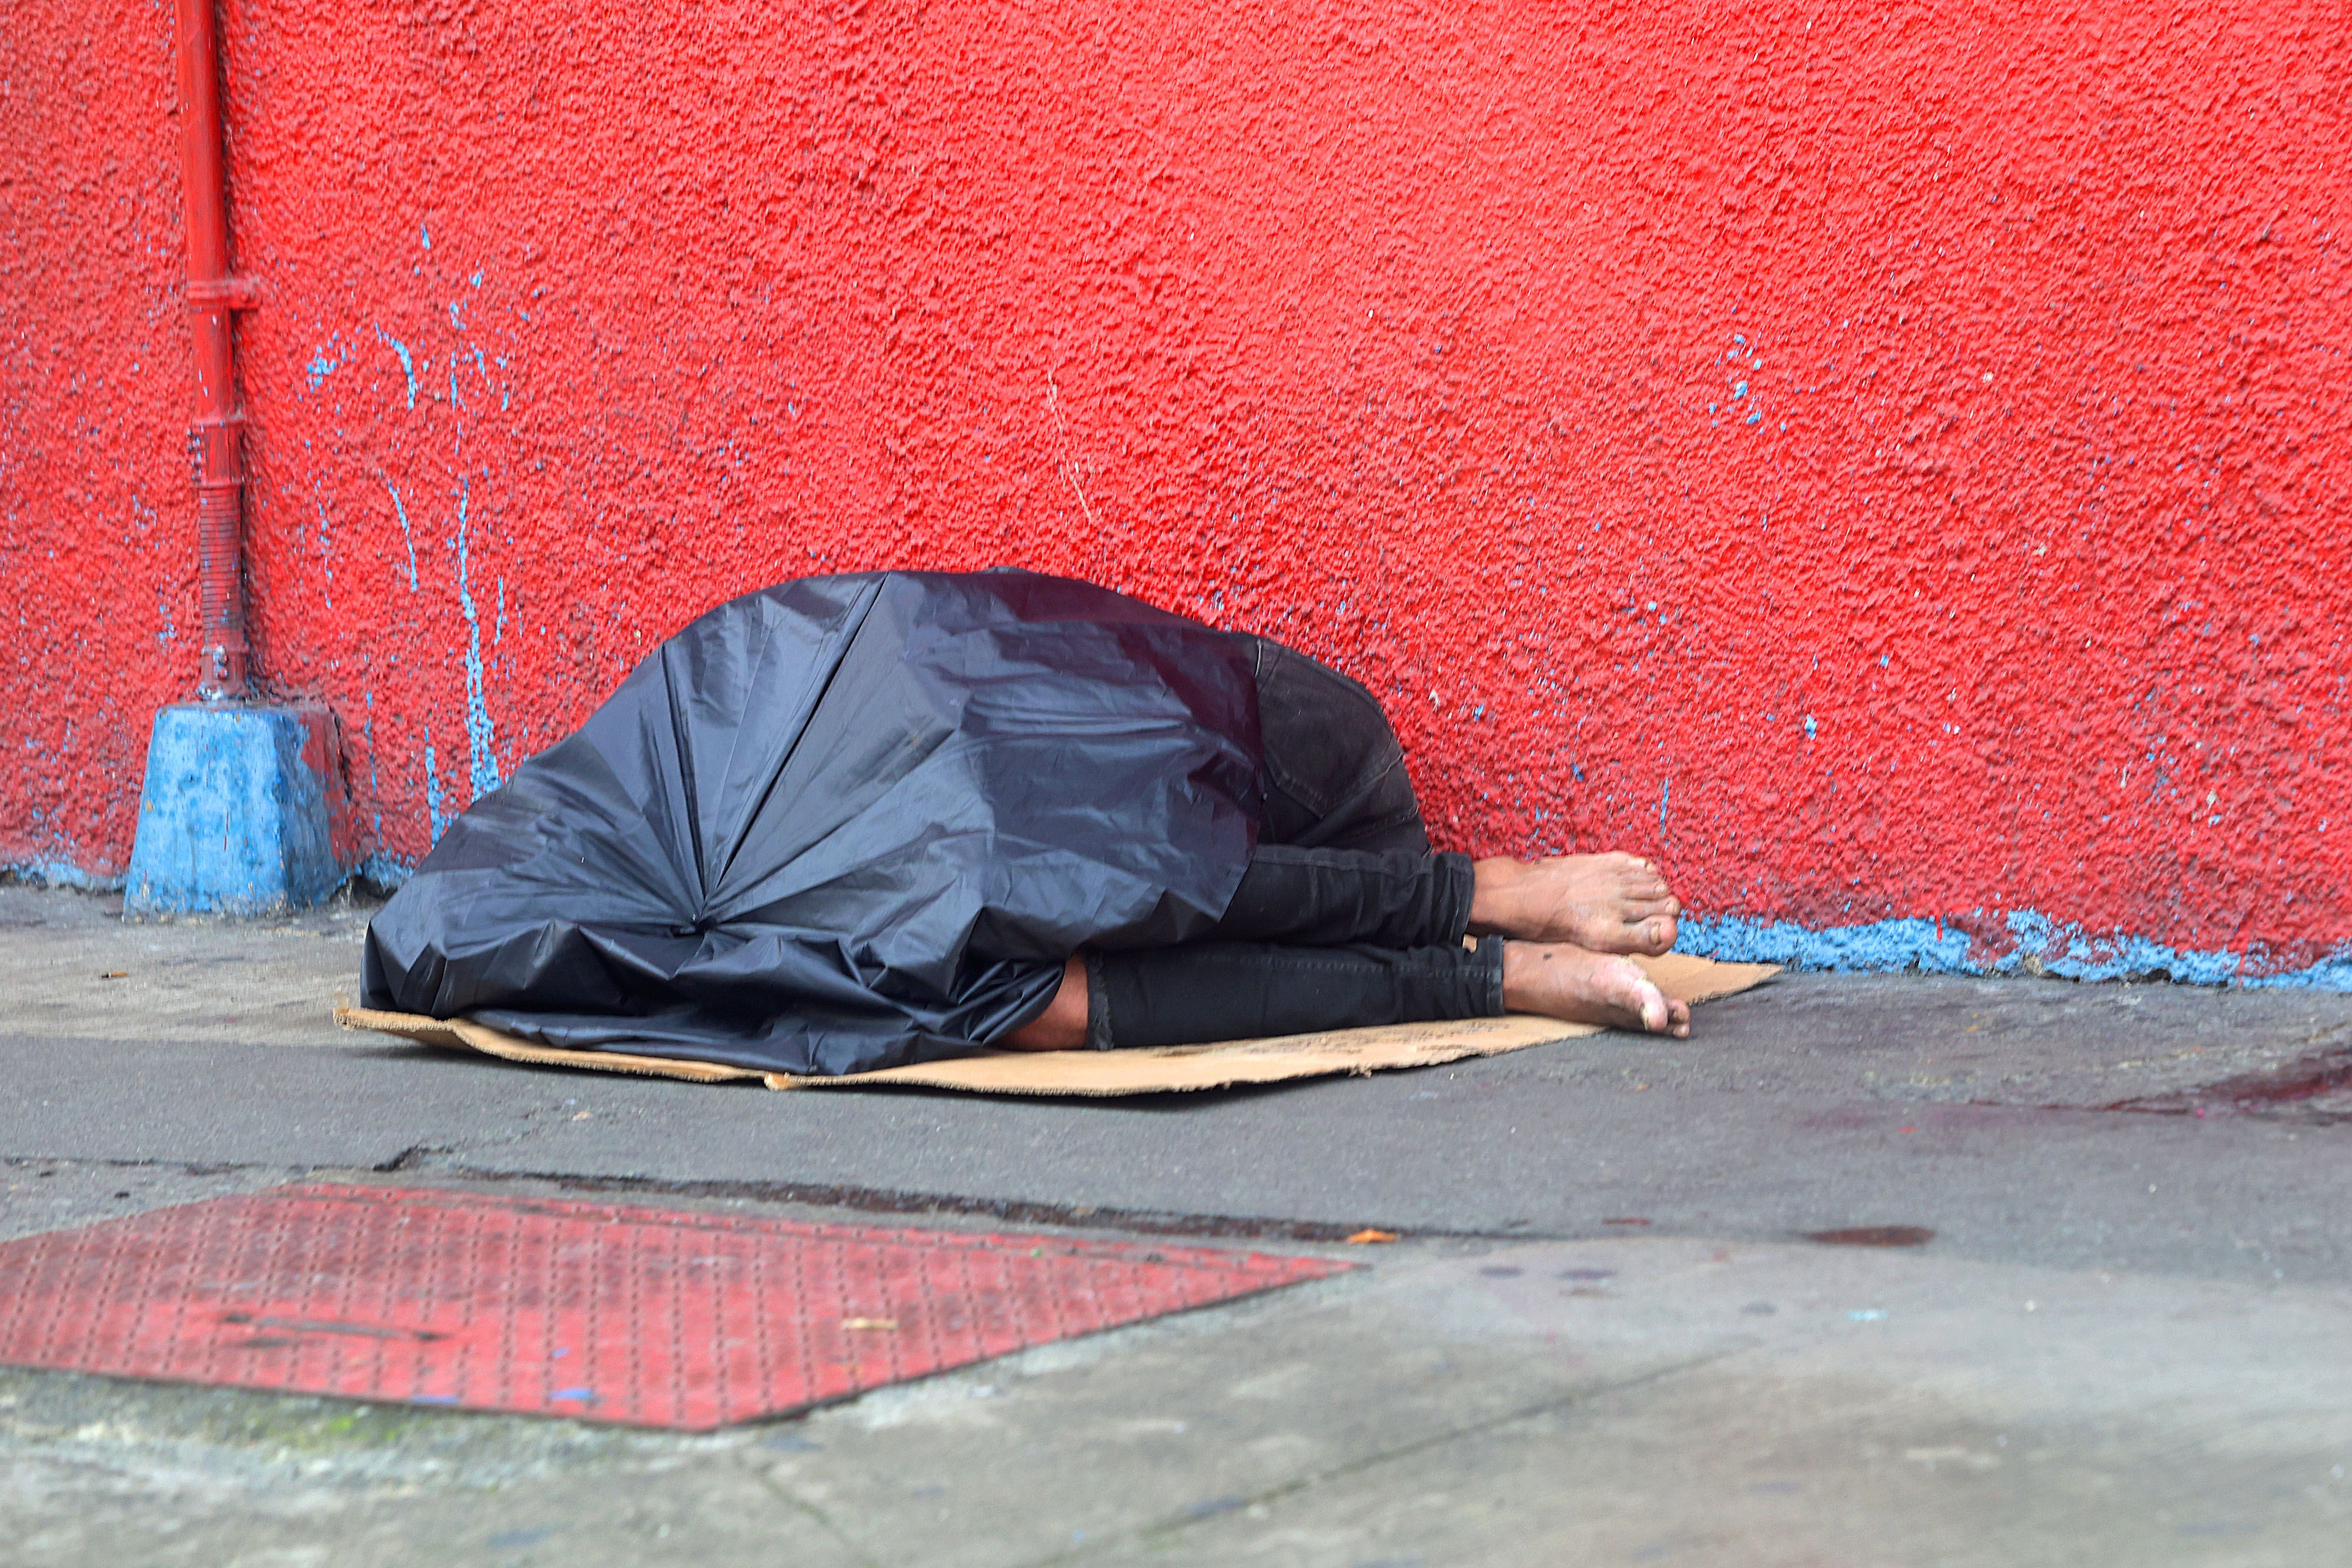 Un censo reciente realizado por la Policía Municipal ubicó a 800 personas dormidas en la calle al amanecer. 